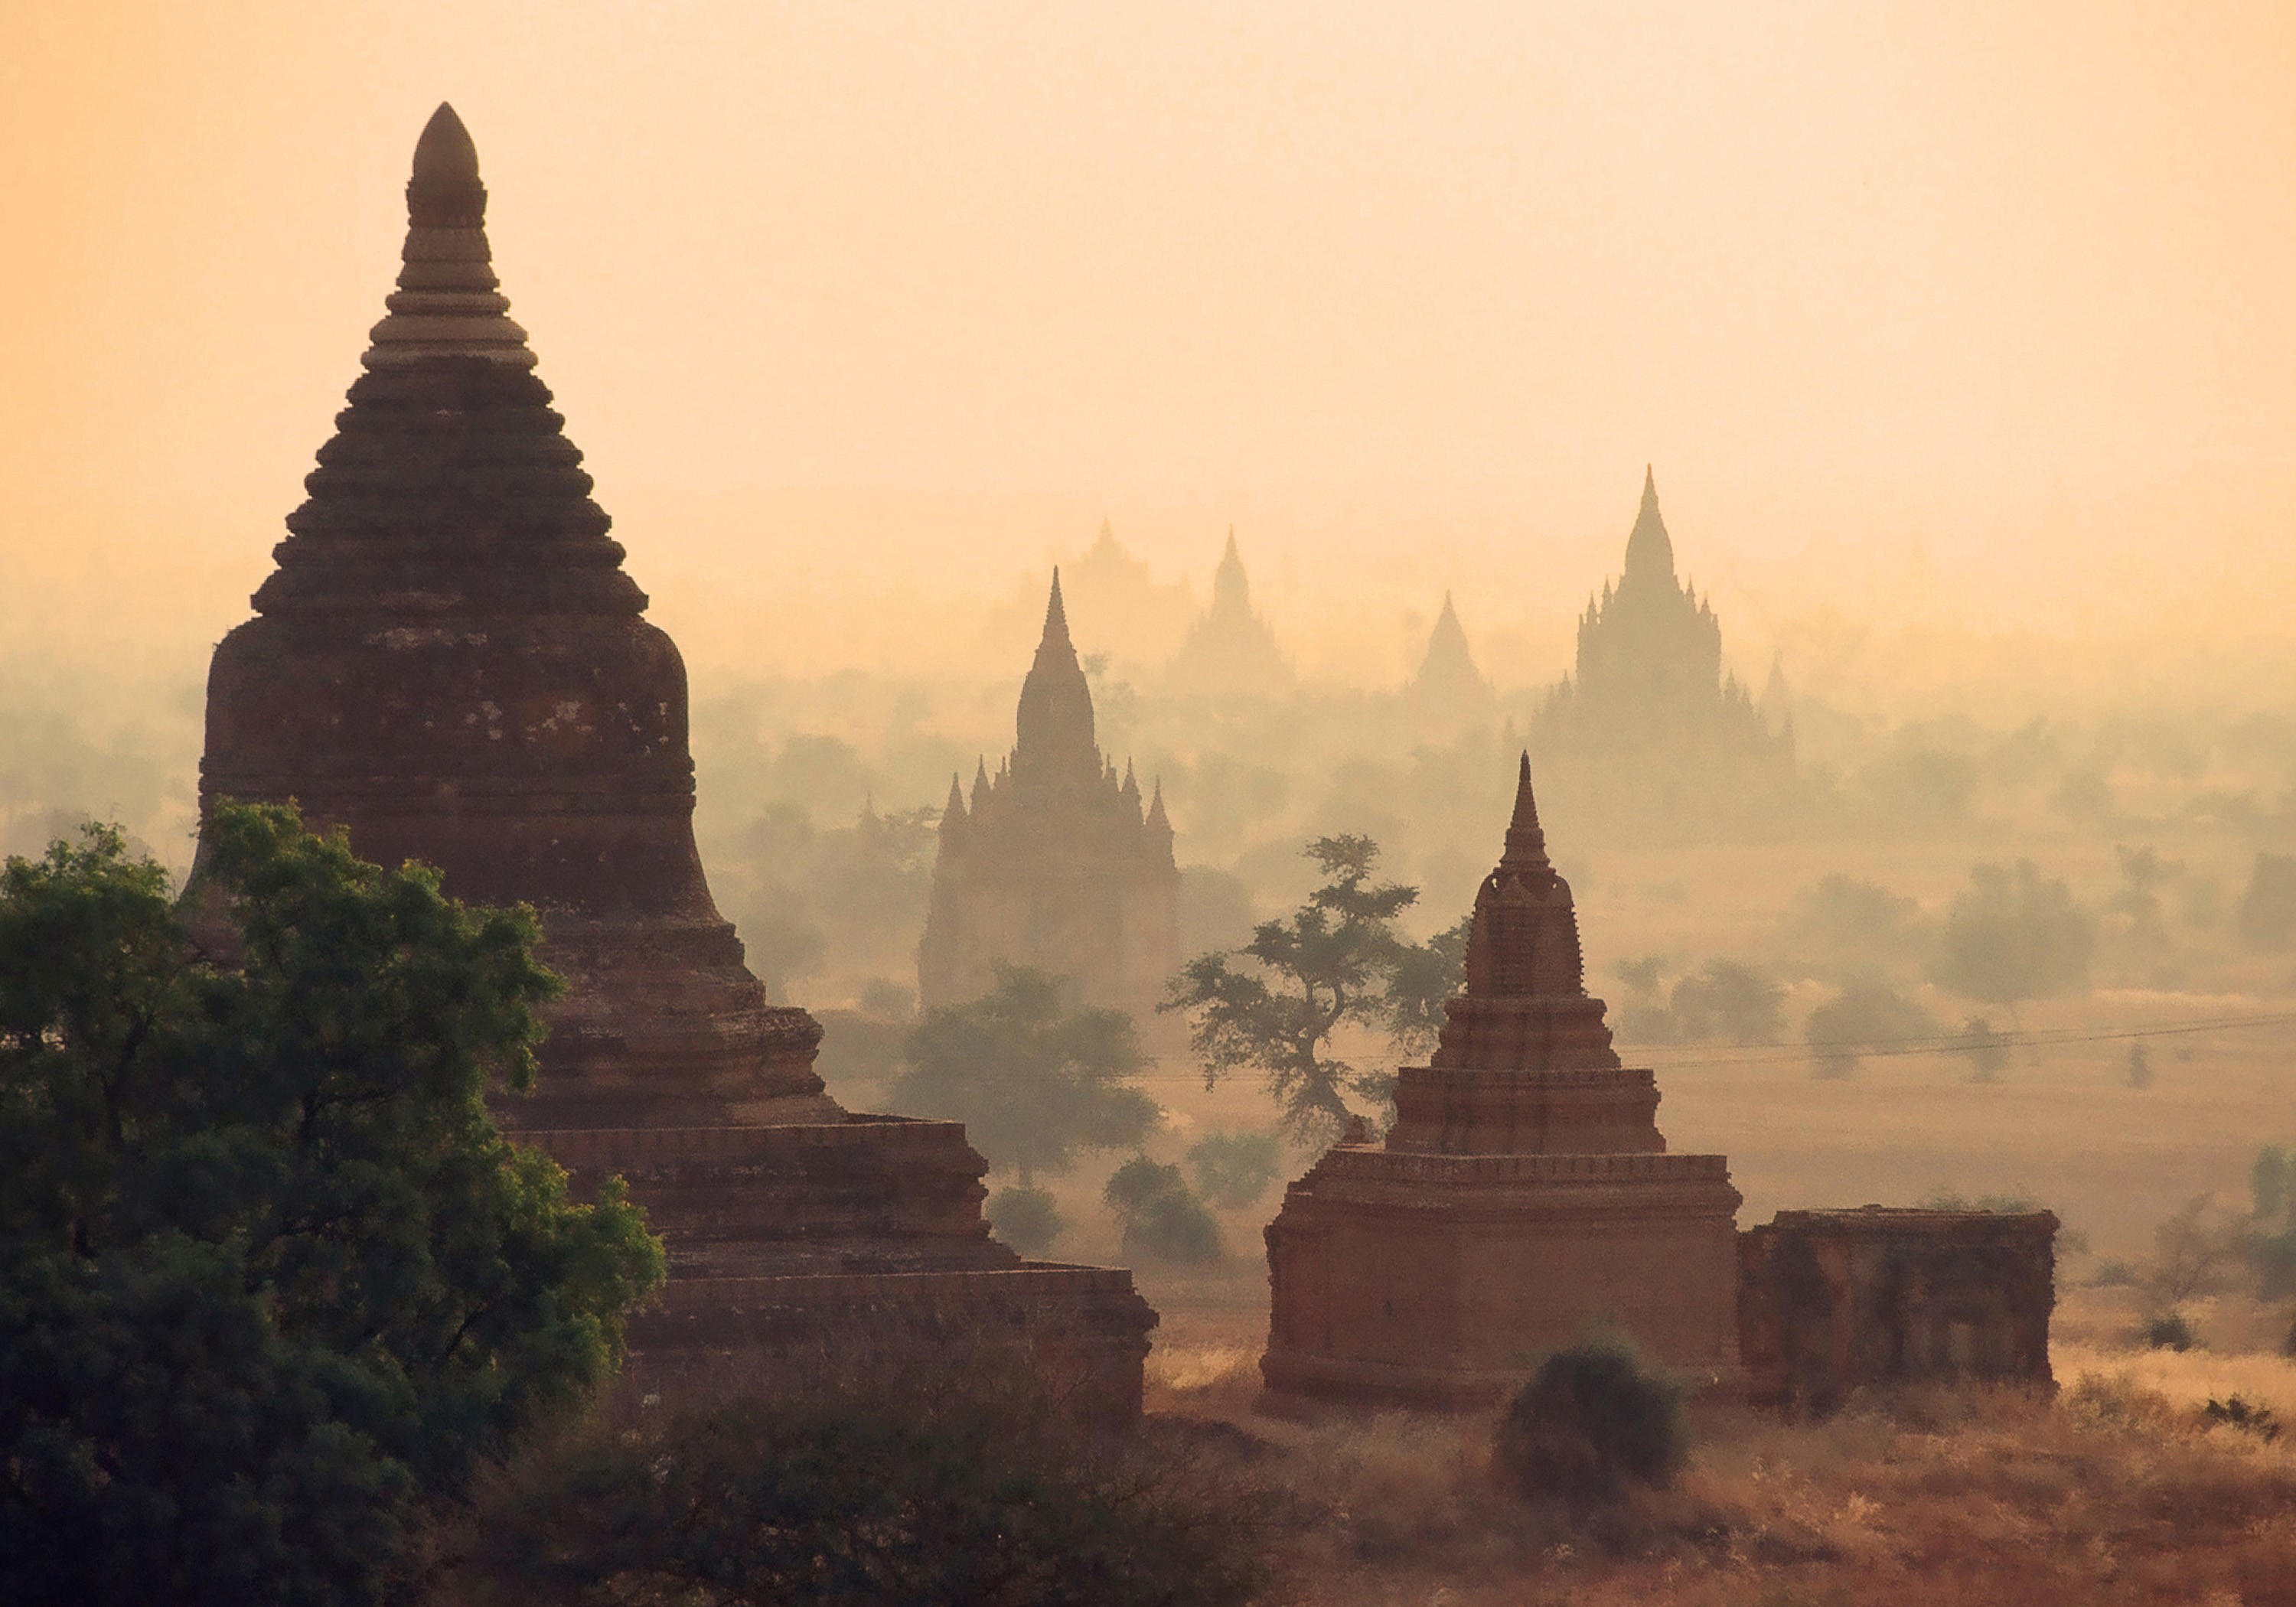 SESTO e SETTIMO GIORNO Arrivo a Bagan, grandissimo sito archeologico con oltre 2.